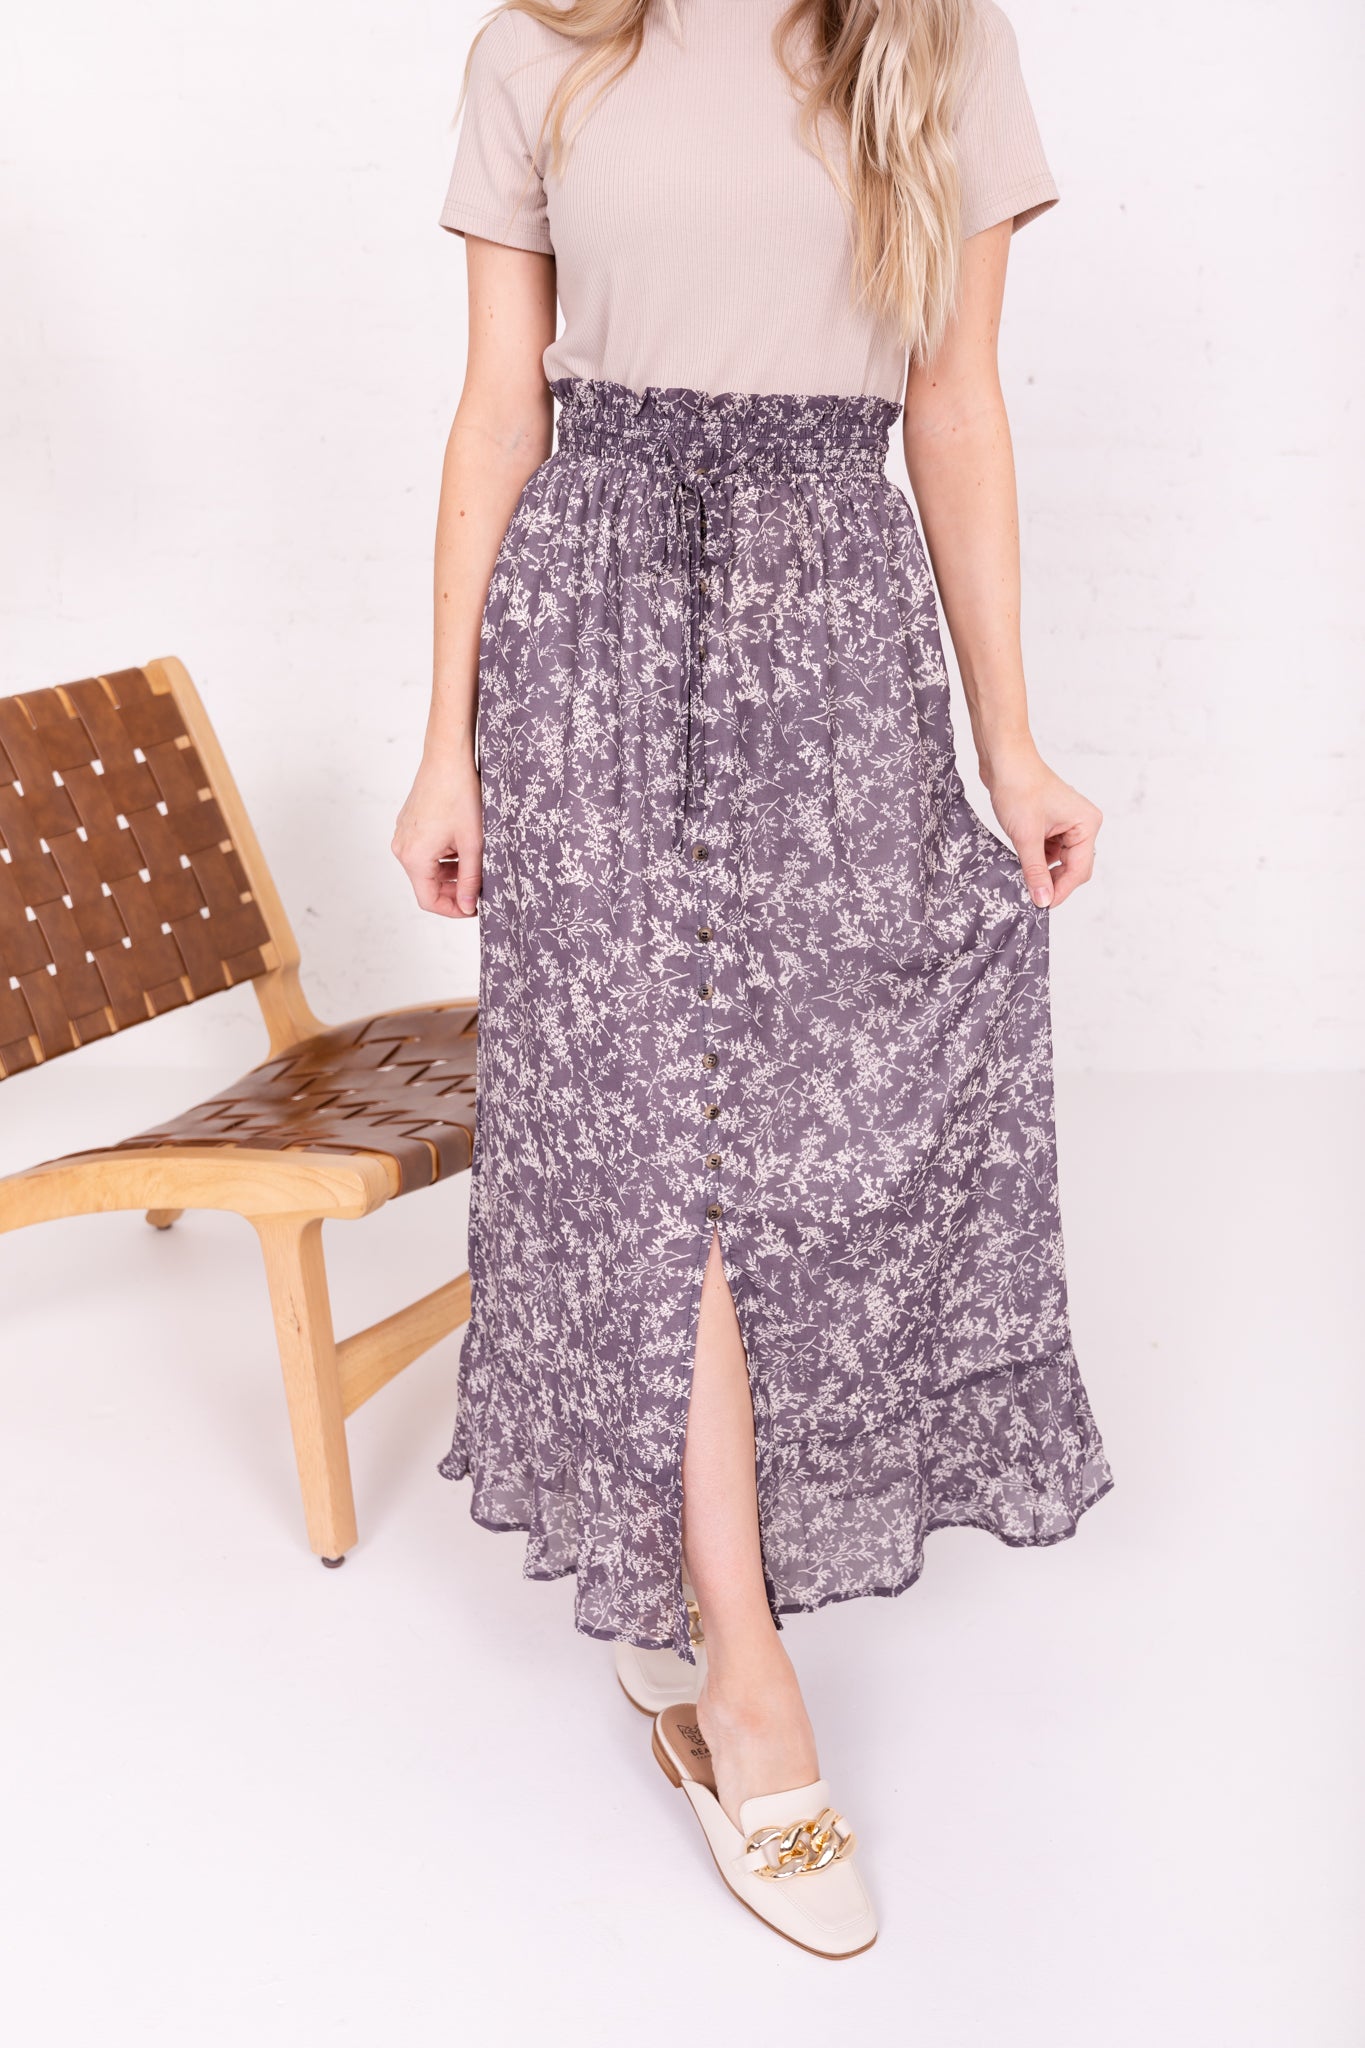 Modest Dresses for Summer – Mikarose Clothing